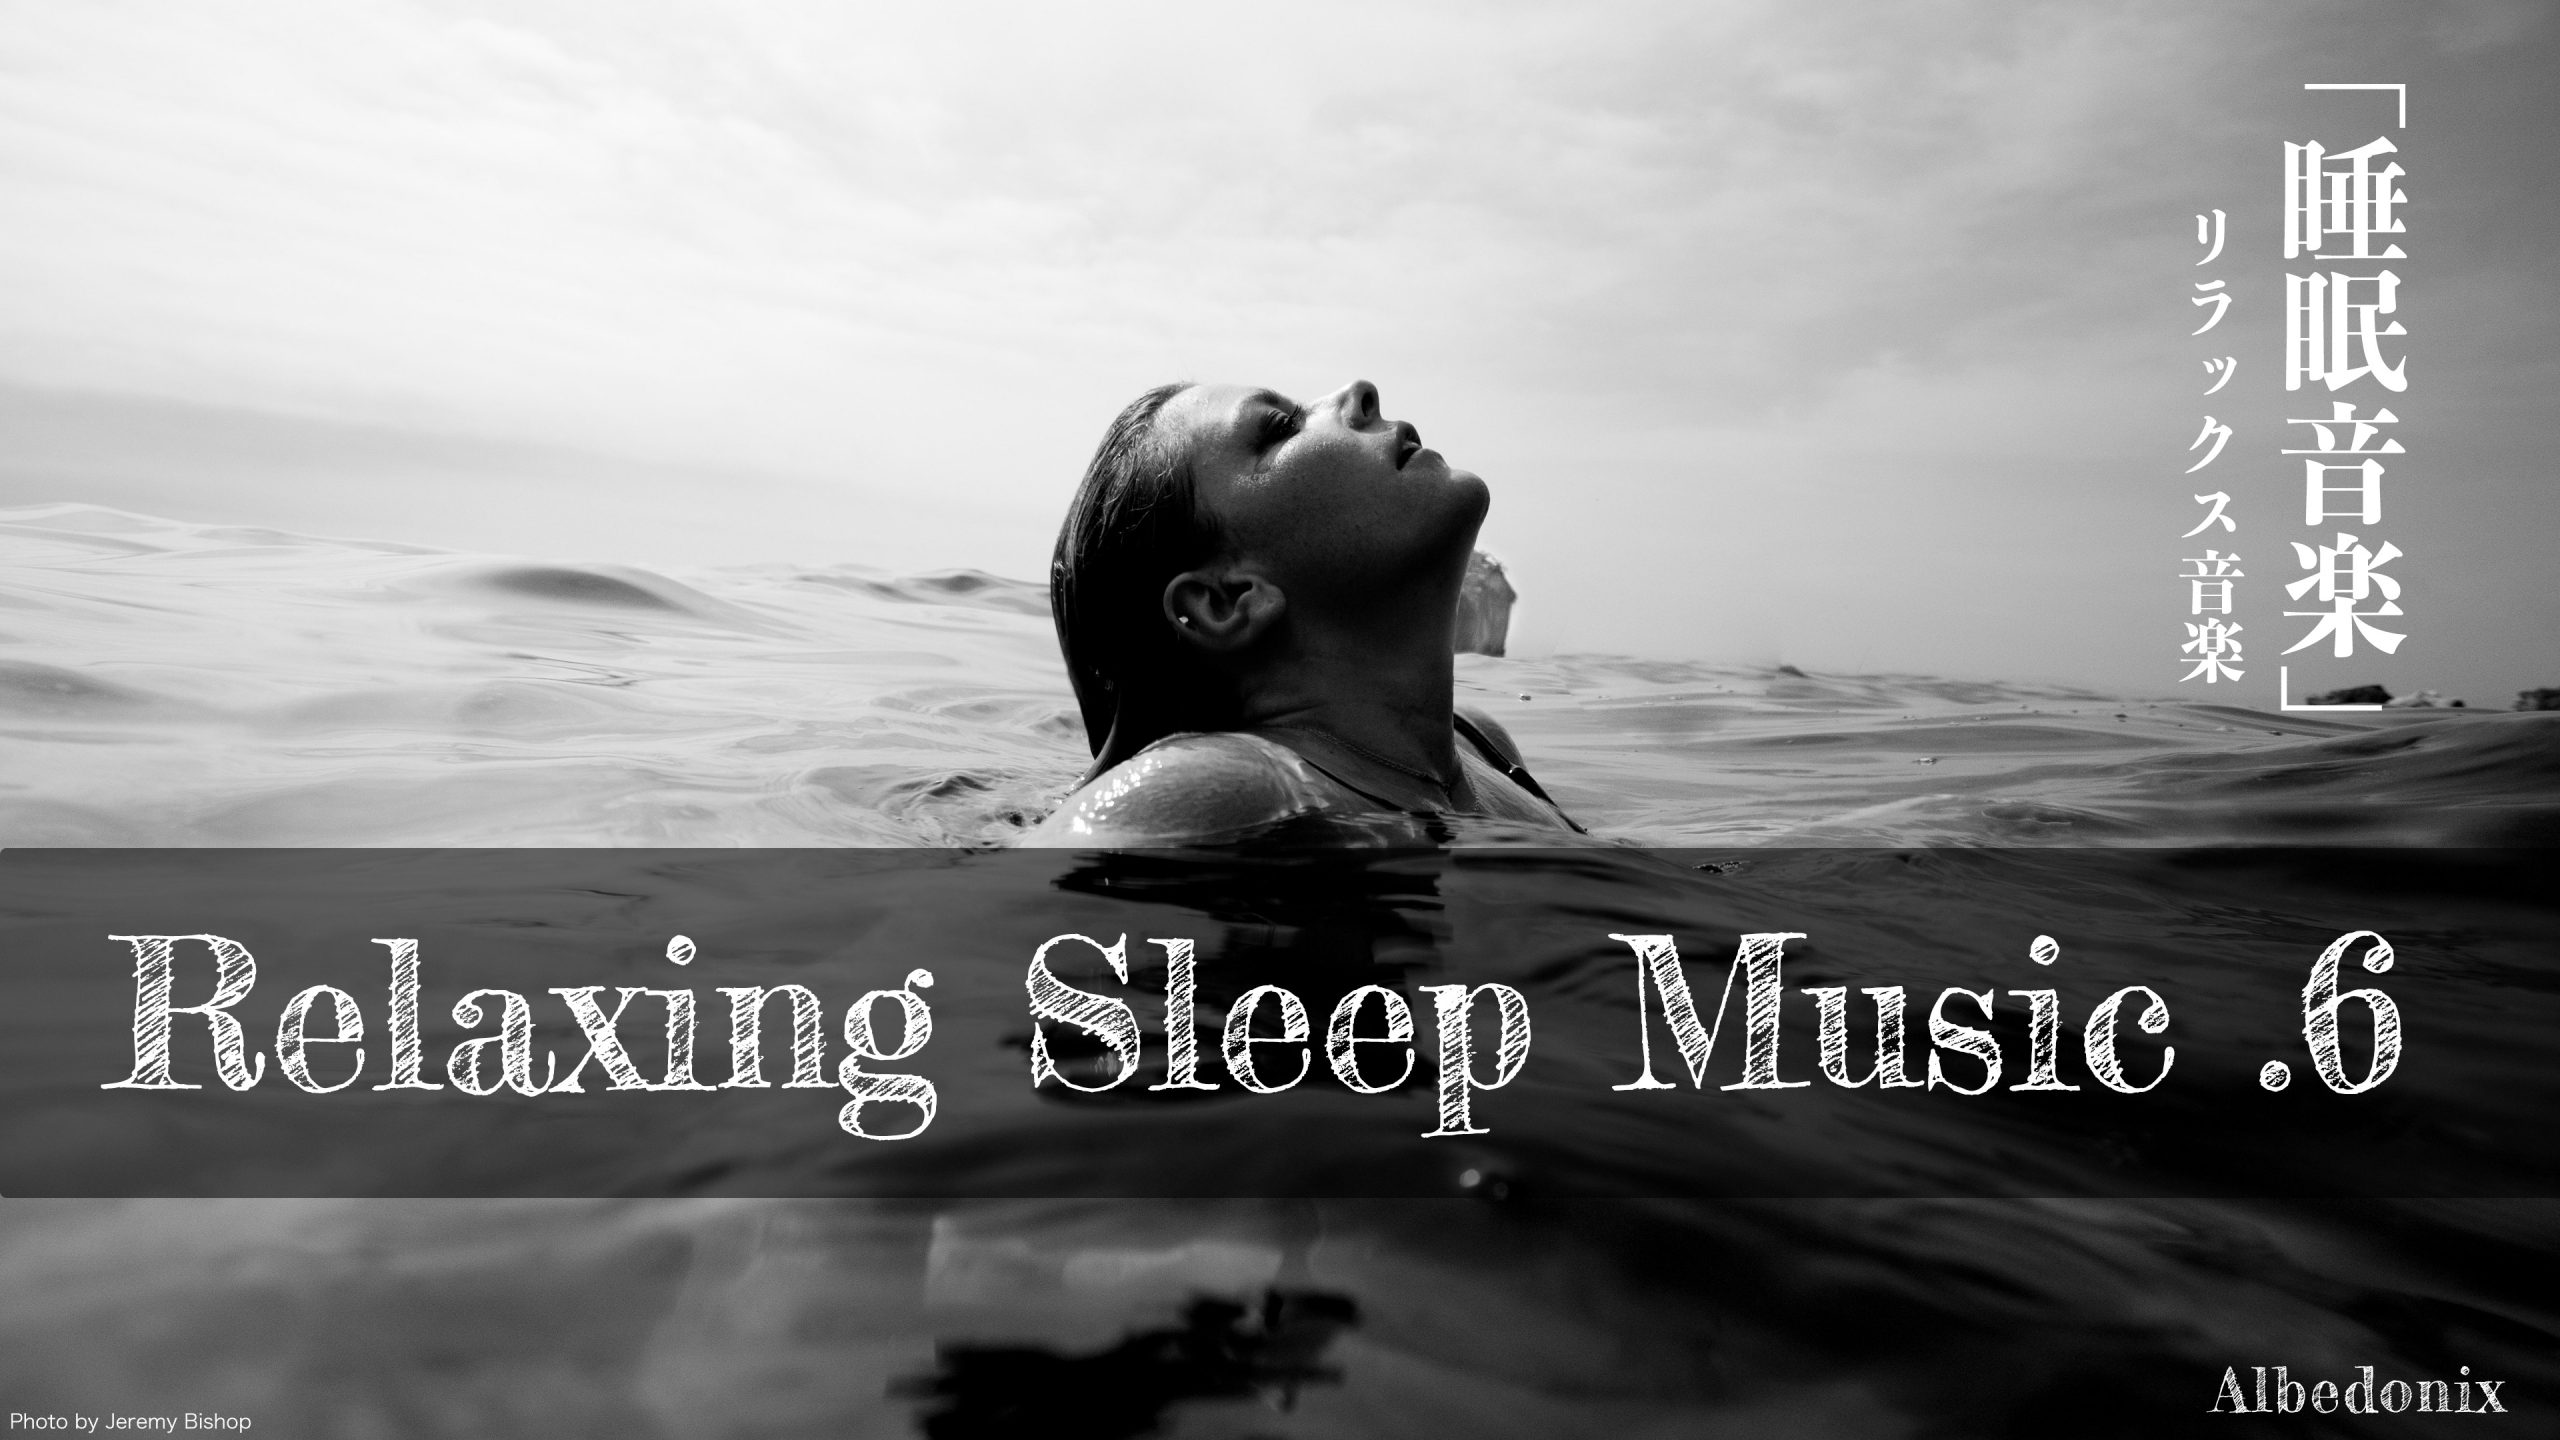 【睡眠】.6 リラックス音楽 睡眠導入、熟睡、BGM、雨音、勉強、集中 Albedonix